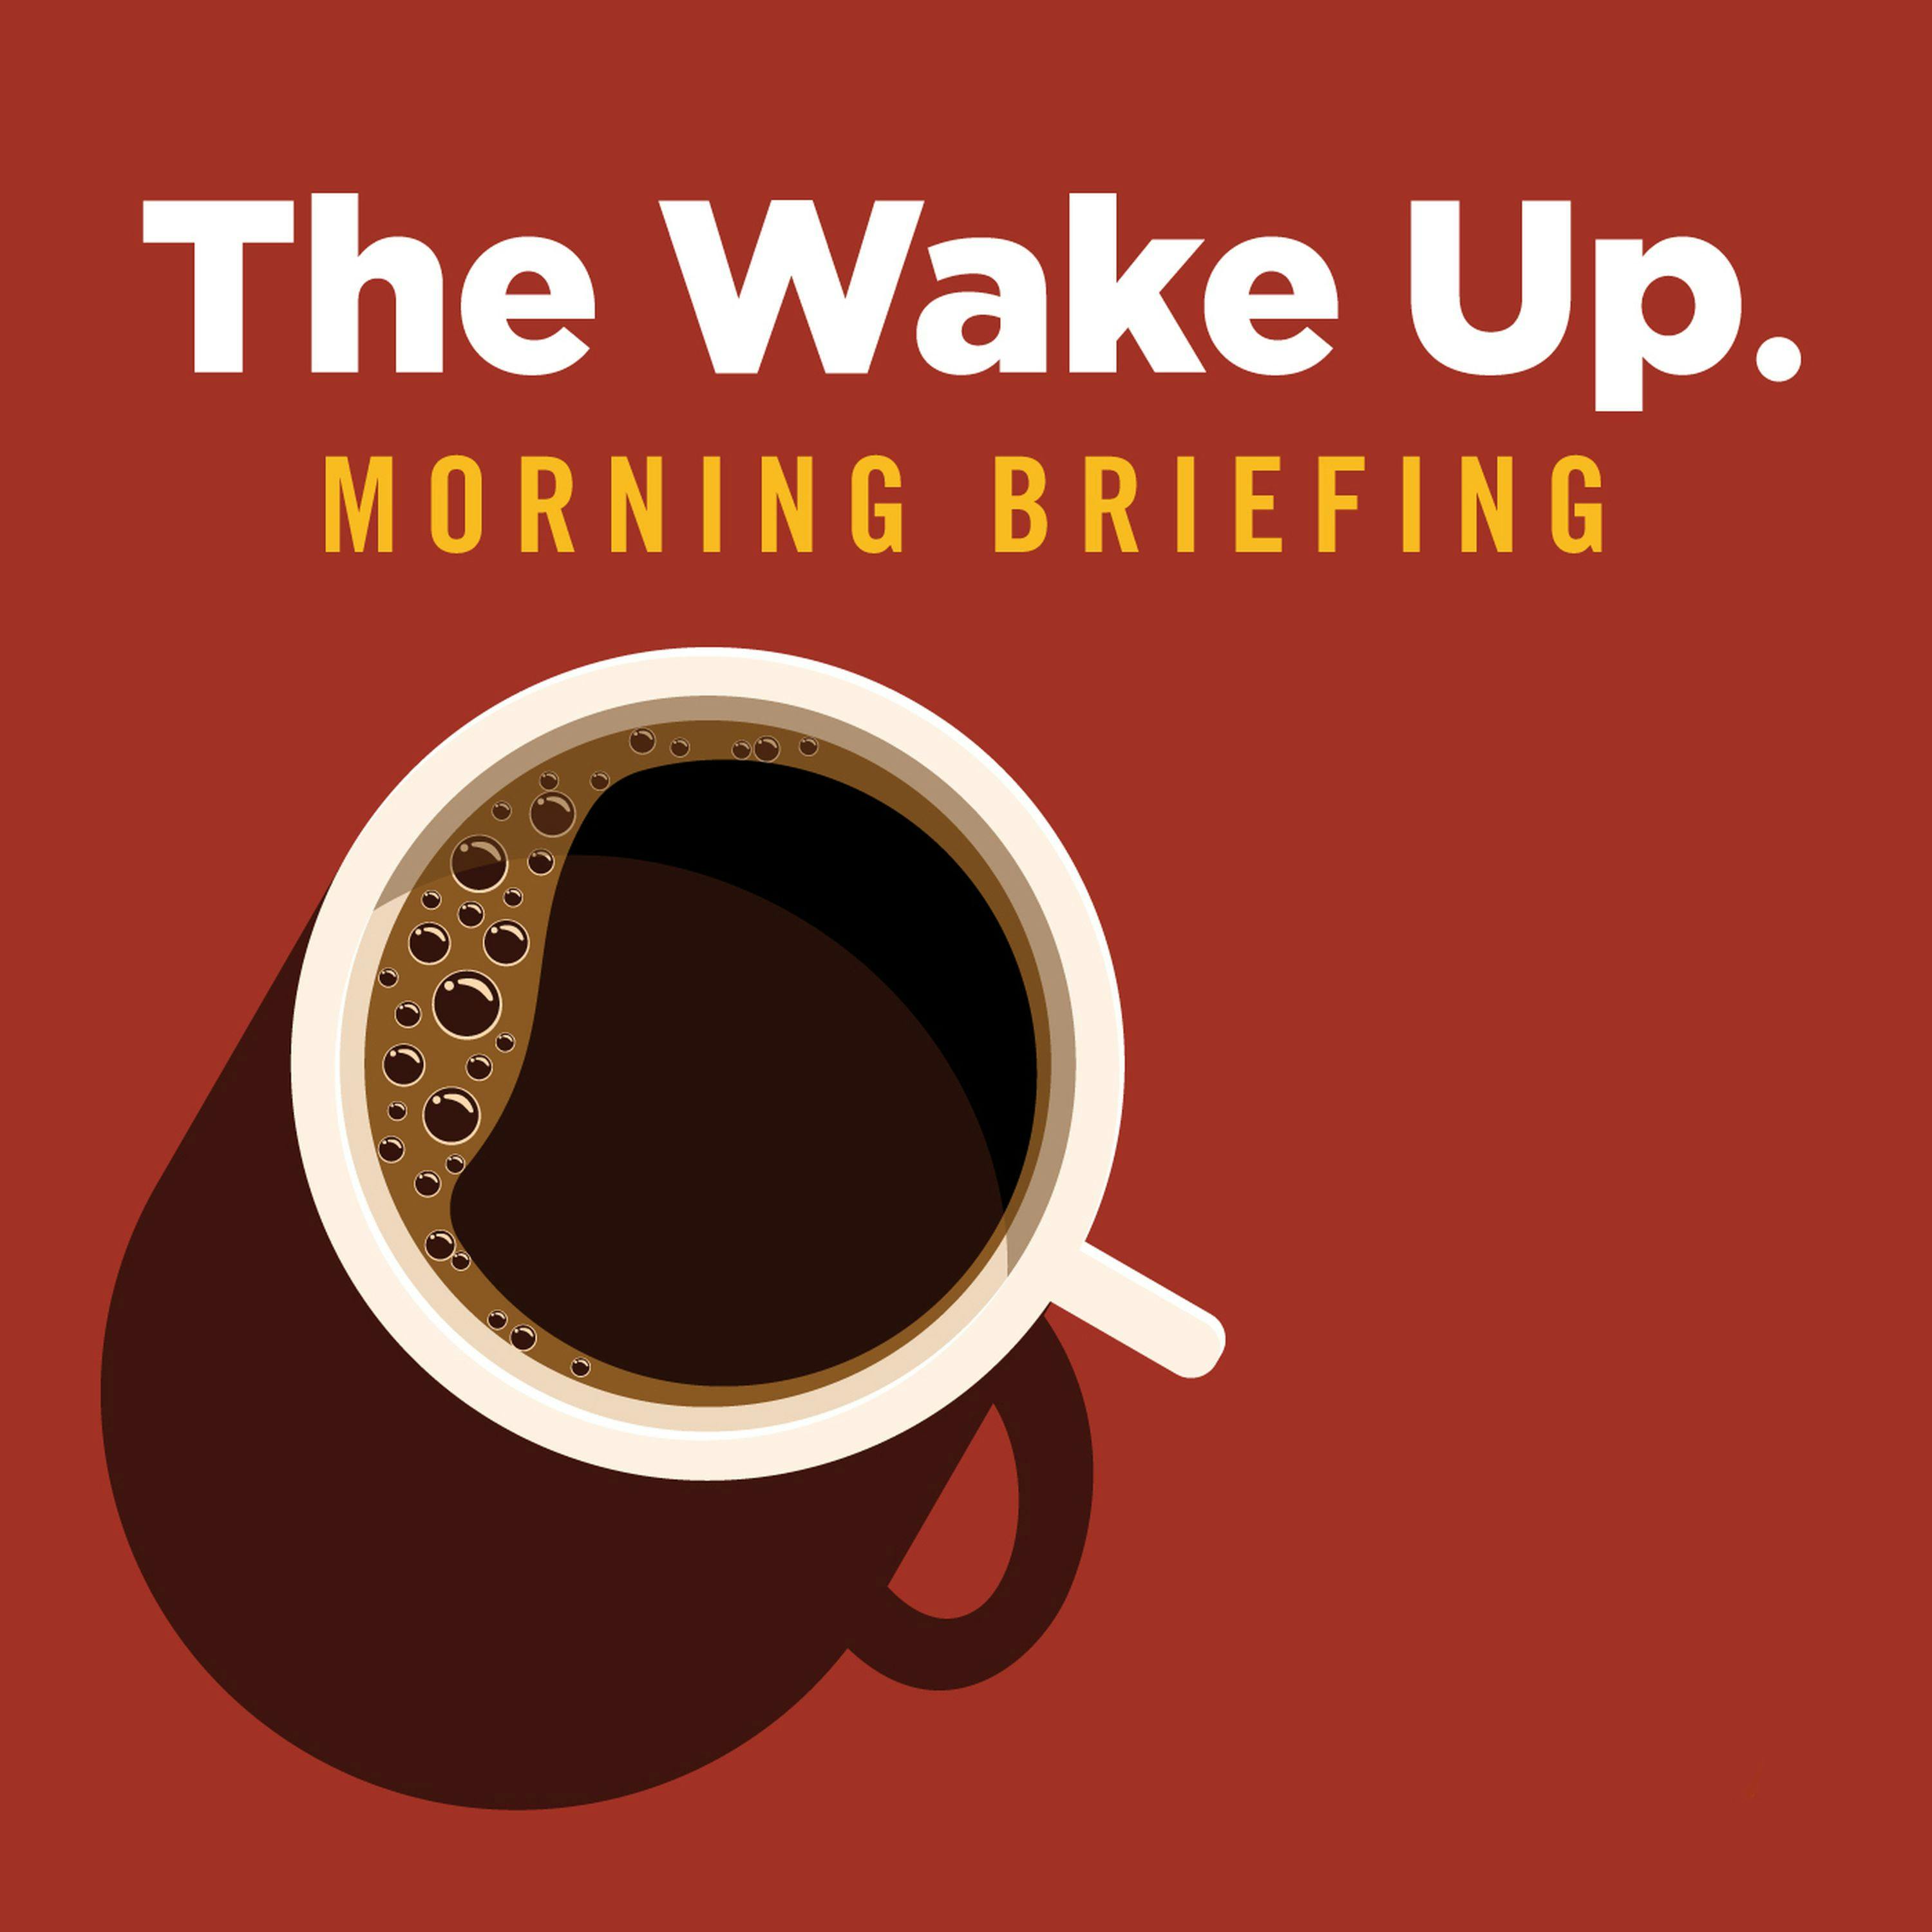 The Wake Up - July 2, 2020 - Should Gov. Mike DeWine shut down Ohio bars?